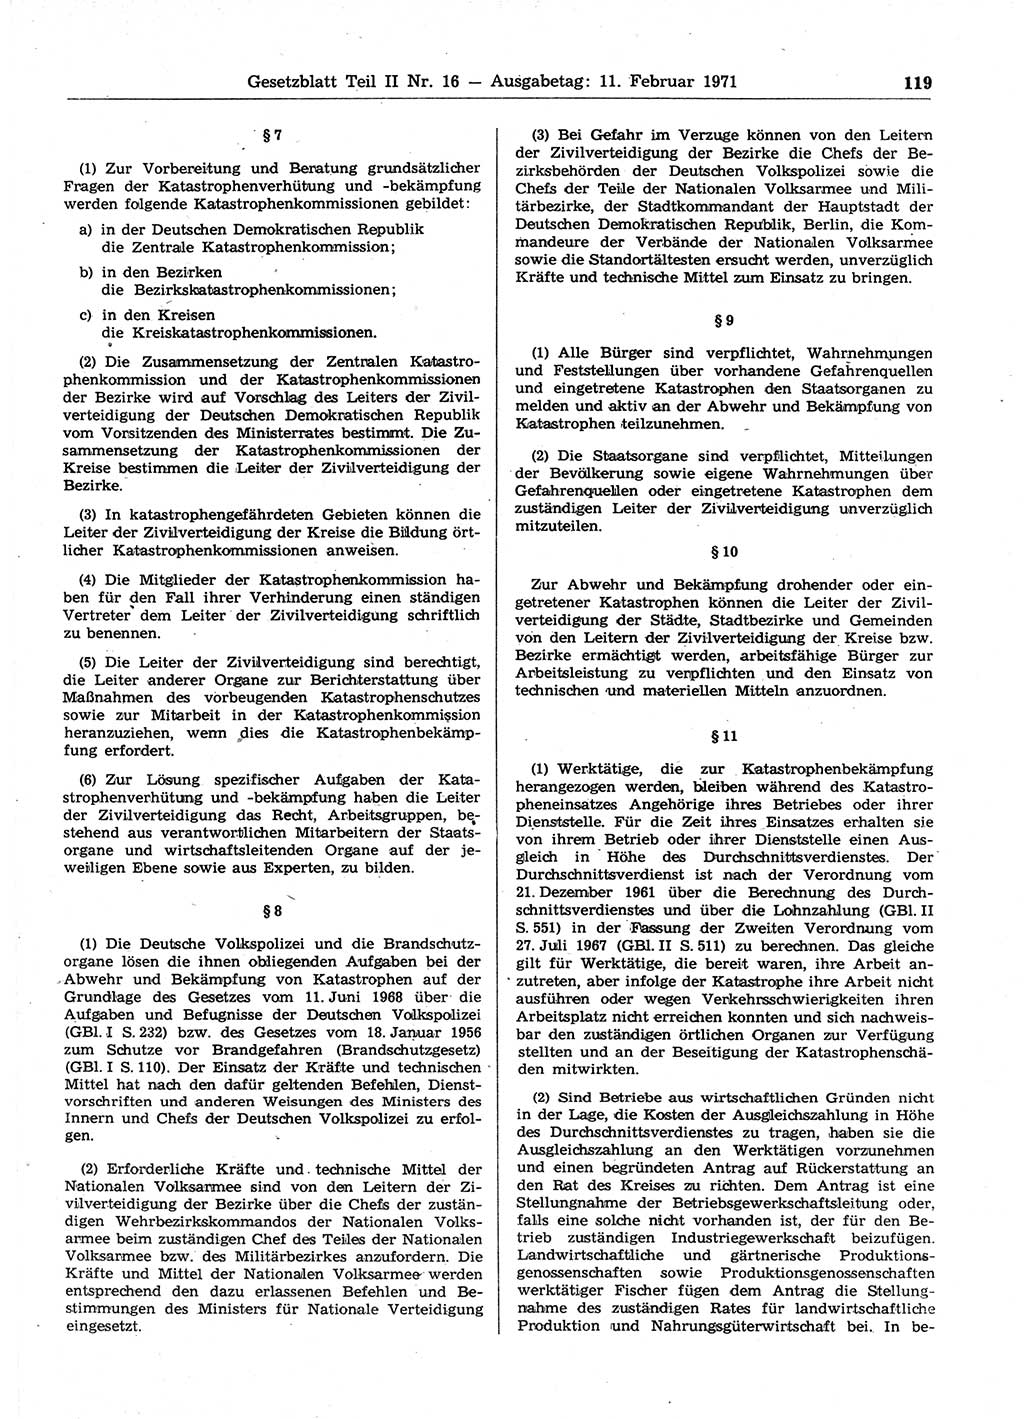 Gesetzblatt (GBl.) der Deutschen Demokratischen Republik (DDR) Teil ⅠⅠ 1971, Seite 119 (GBl. DDR ⅠⅠ 1971, S. 119)